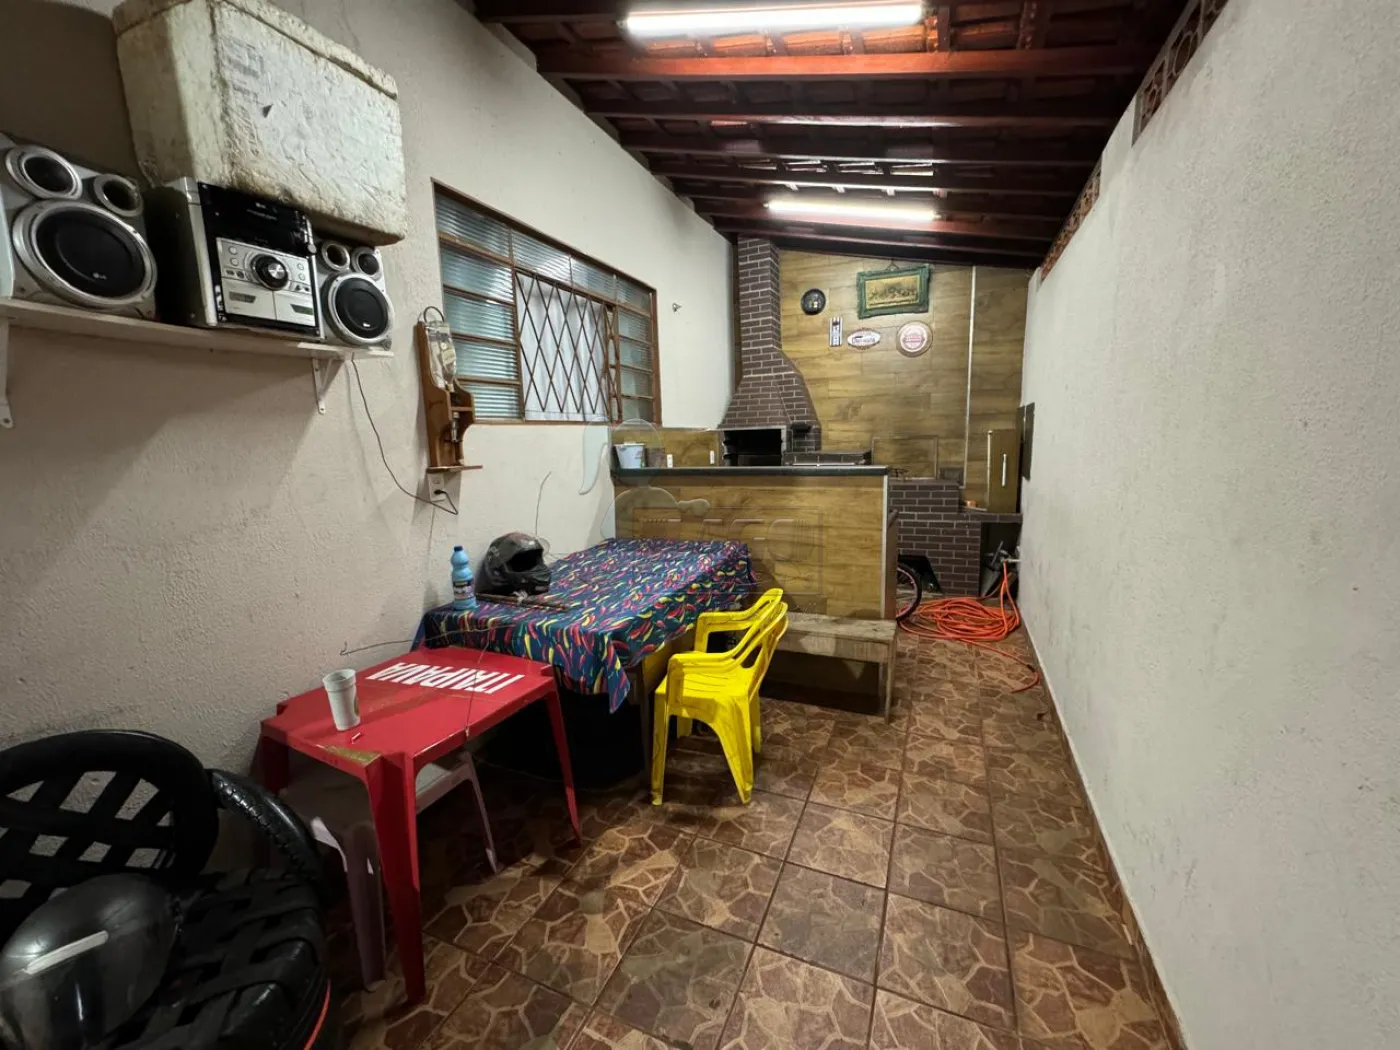 Comprar Casas / Padrão em Ribeirão Preto R$ 400.000,00 - Foto 2